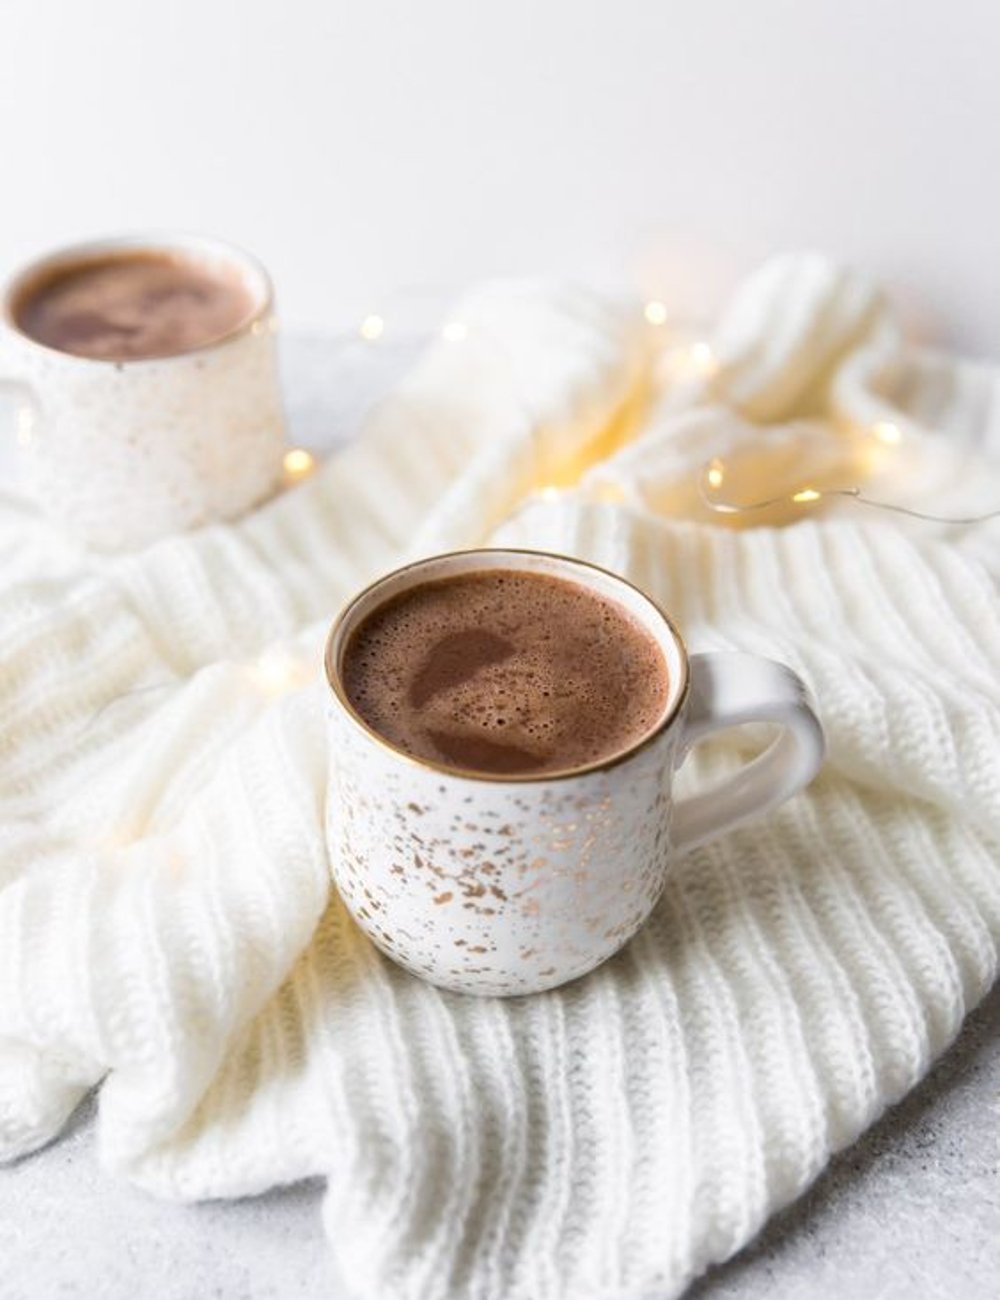 Chocolate quente - Chocolate quente - Chocolate quente - Chocolate quente - Chocolate quente - https://stealthelook.com.br